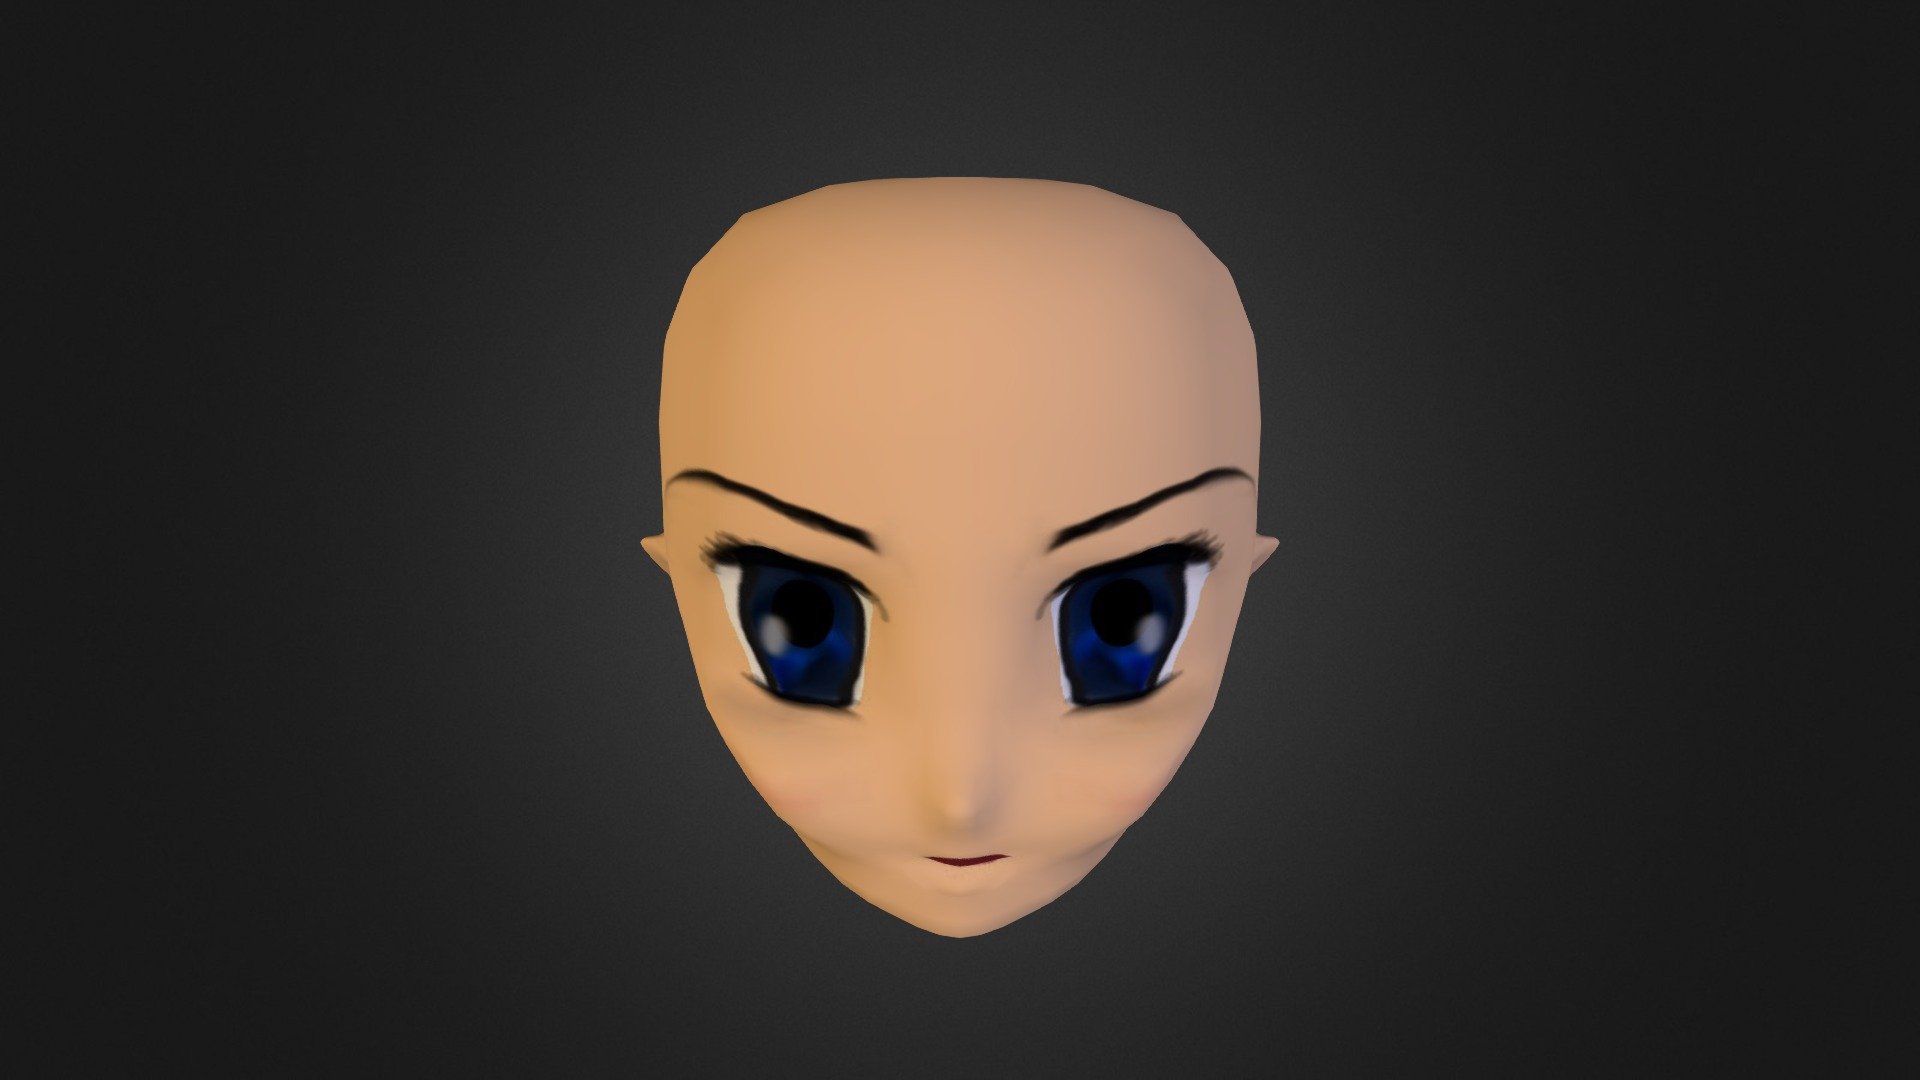 anime face - 3D model by akYip (@akYip) [d8ec673]